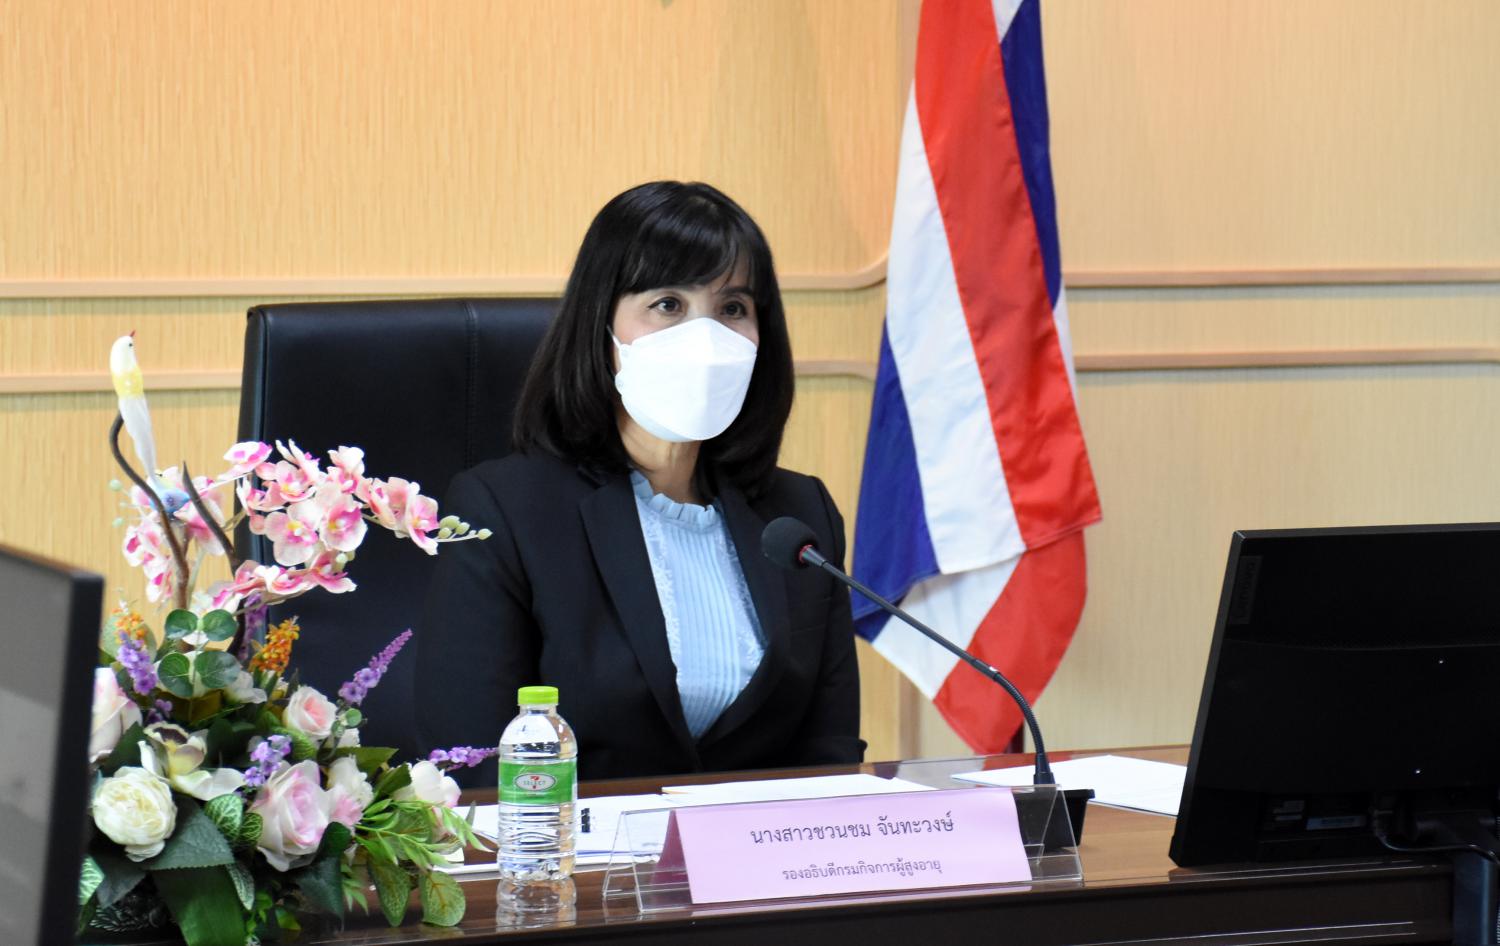 พม. โดย กรม ผส. ร่วมการประชุมติดตามประเมินผลการดำเนินงานธนาคารเวลาของประเทศไทย 10 พื้นที่ กรุงเทพมหานคร